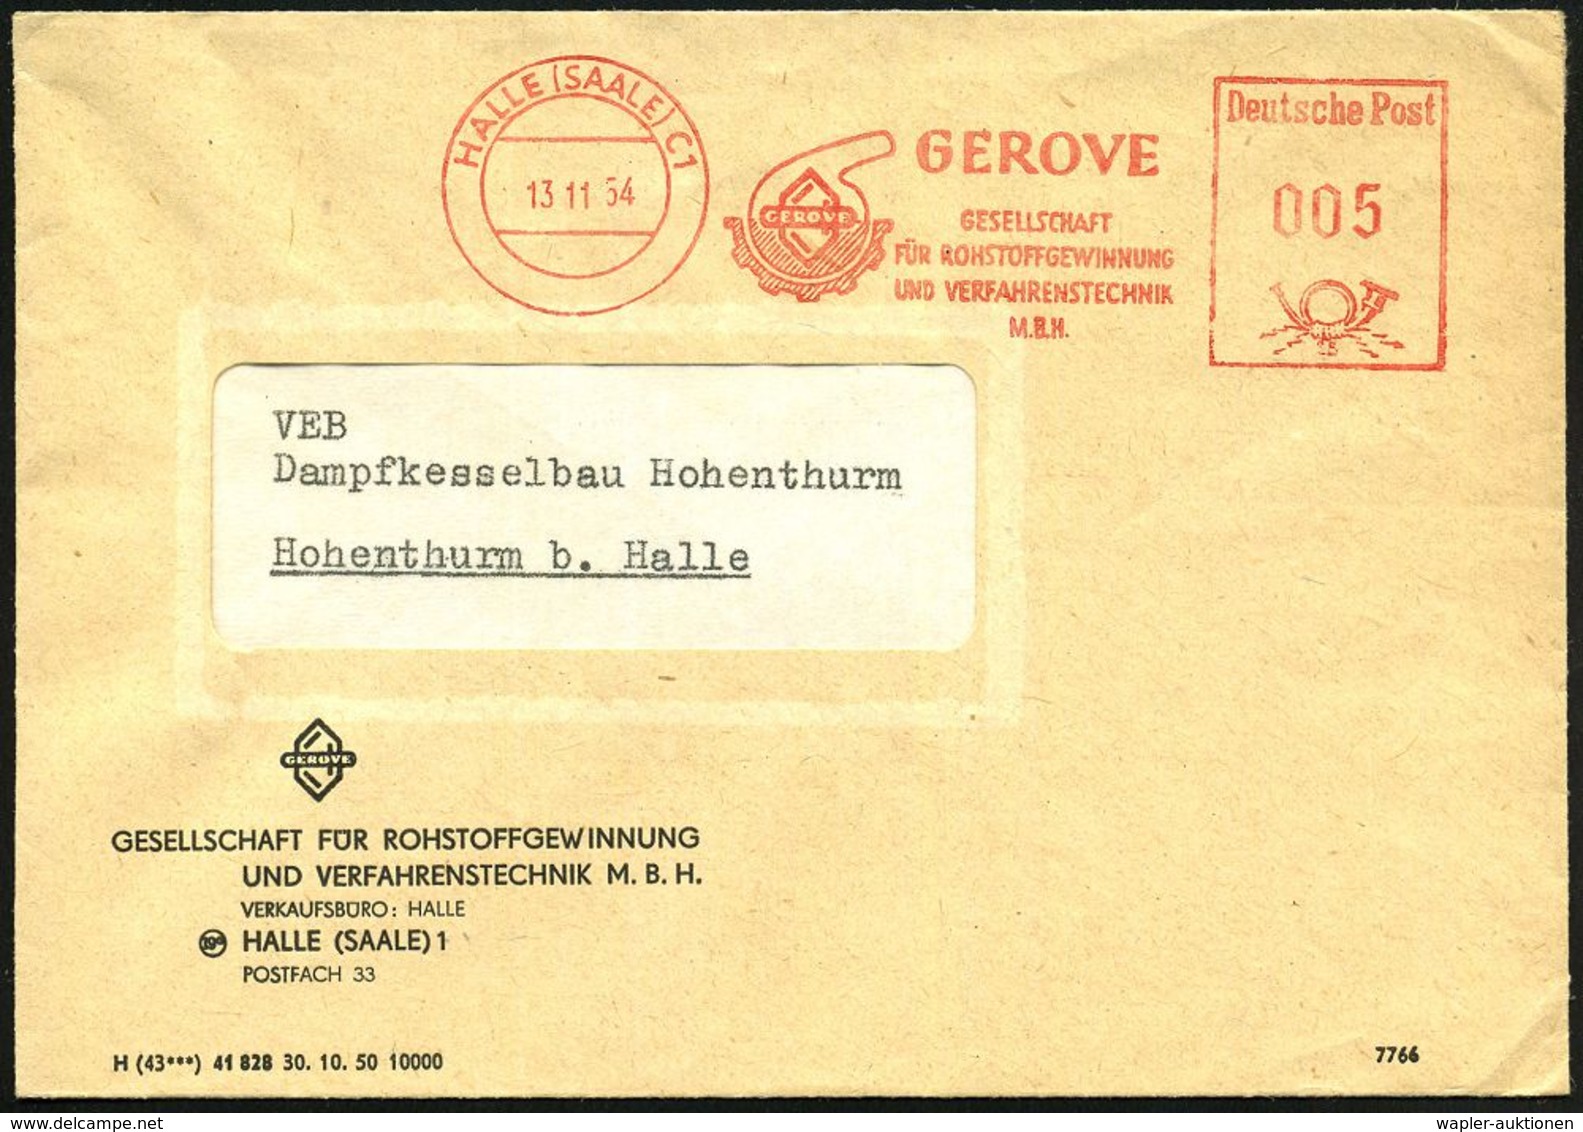 HALLE (SAALE) C 1/ GEROVE/ GESELLSCHAFT/ FÜR ROHSTOFFGEWINNUNG/ U.VERFAHRENSTECHNIK/ M.B.H. 1954 (13.11.) AFS = Glaskolb - Chimie